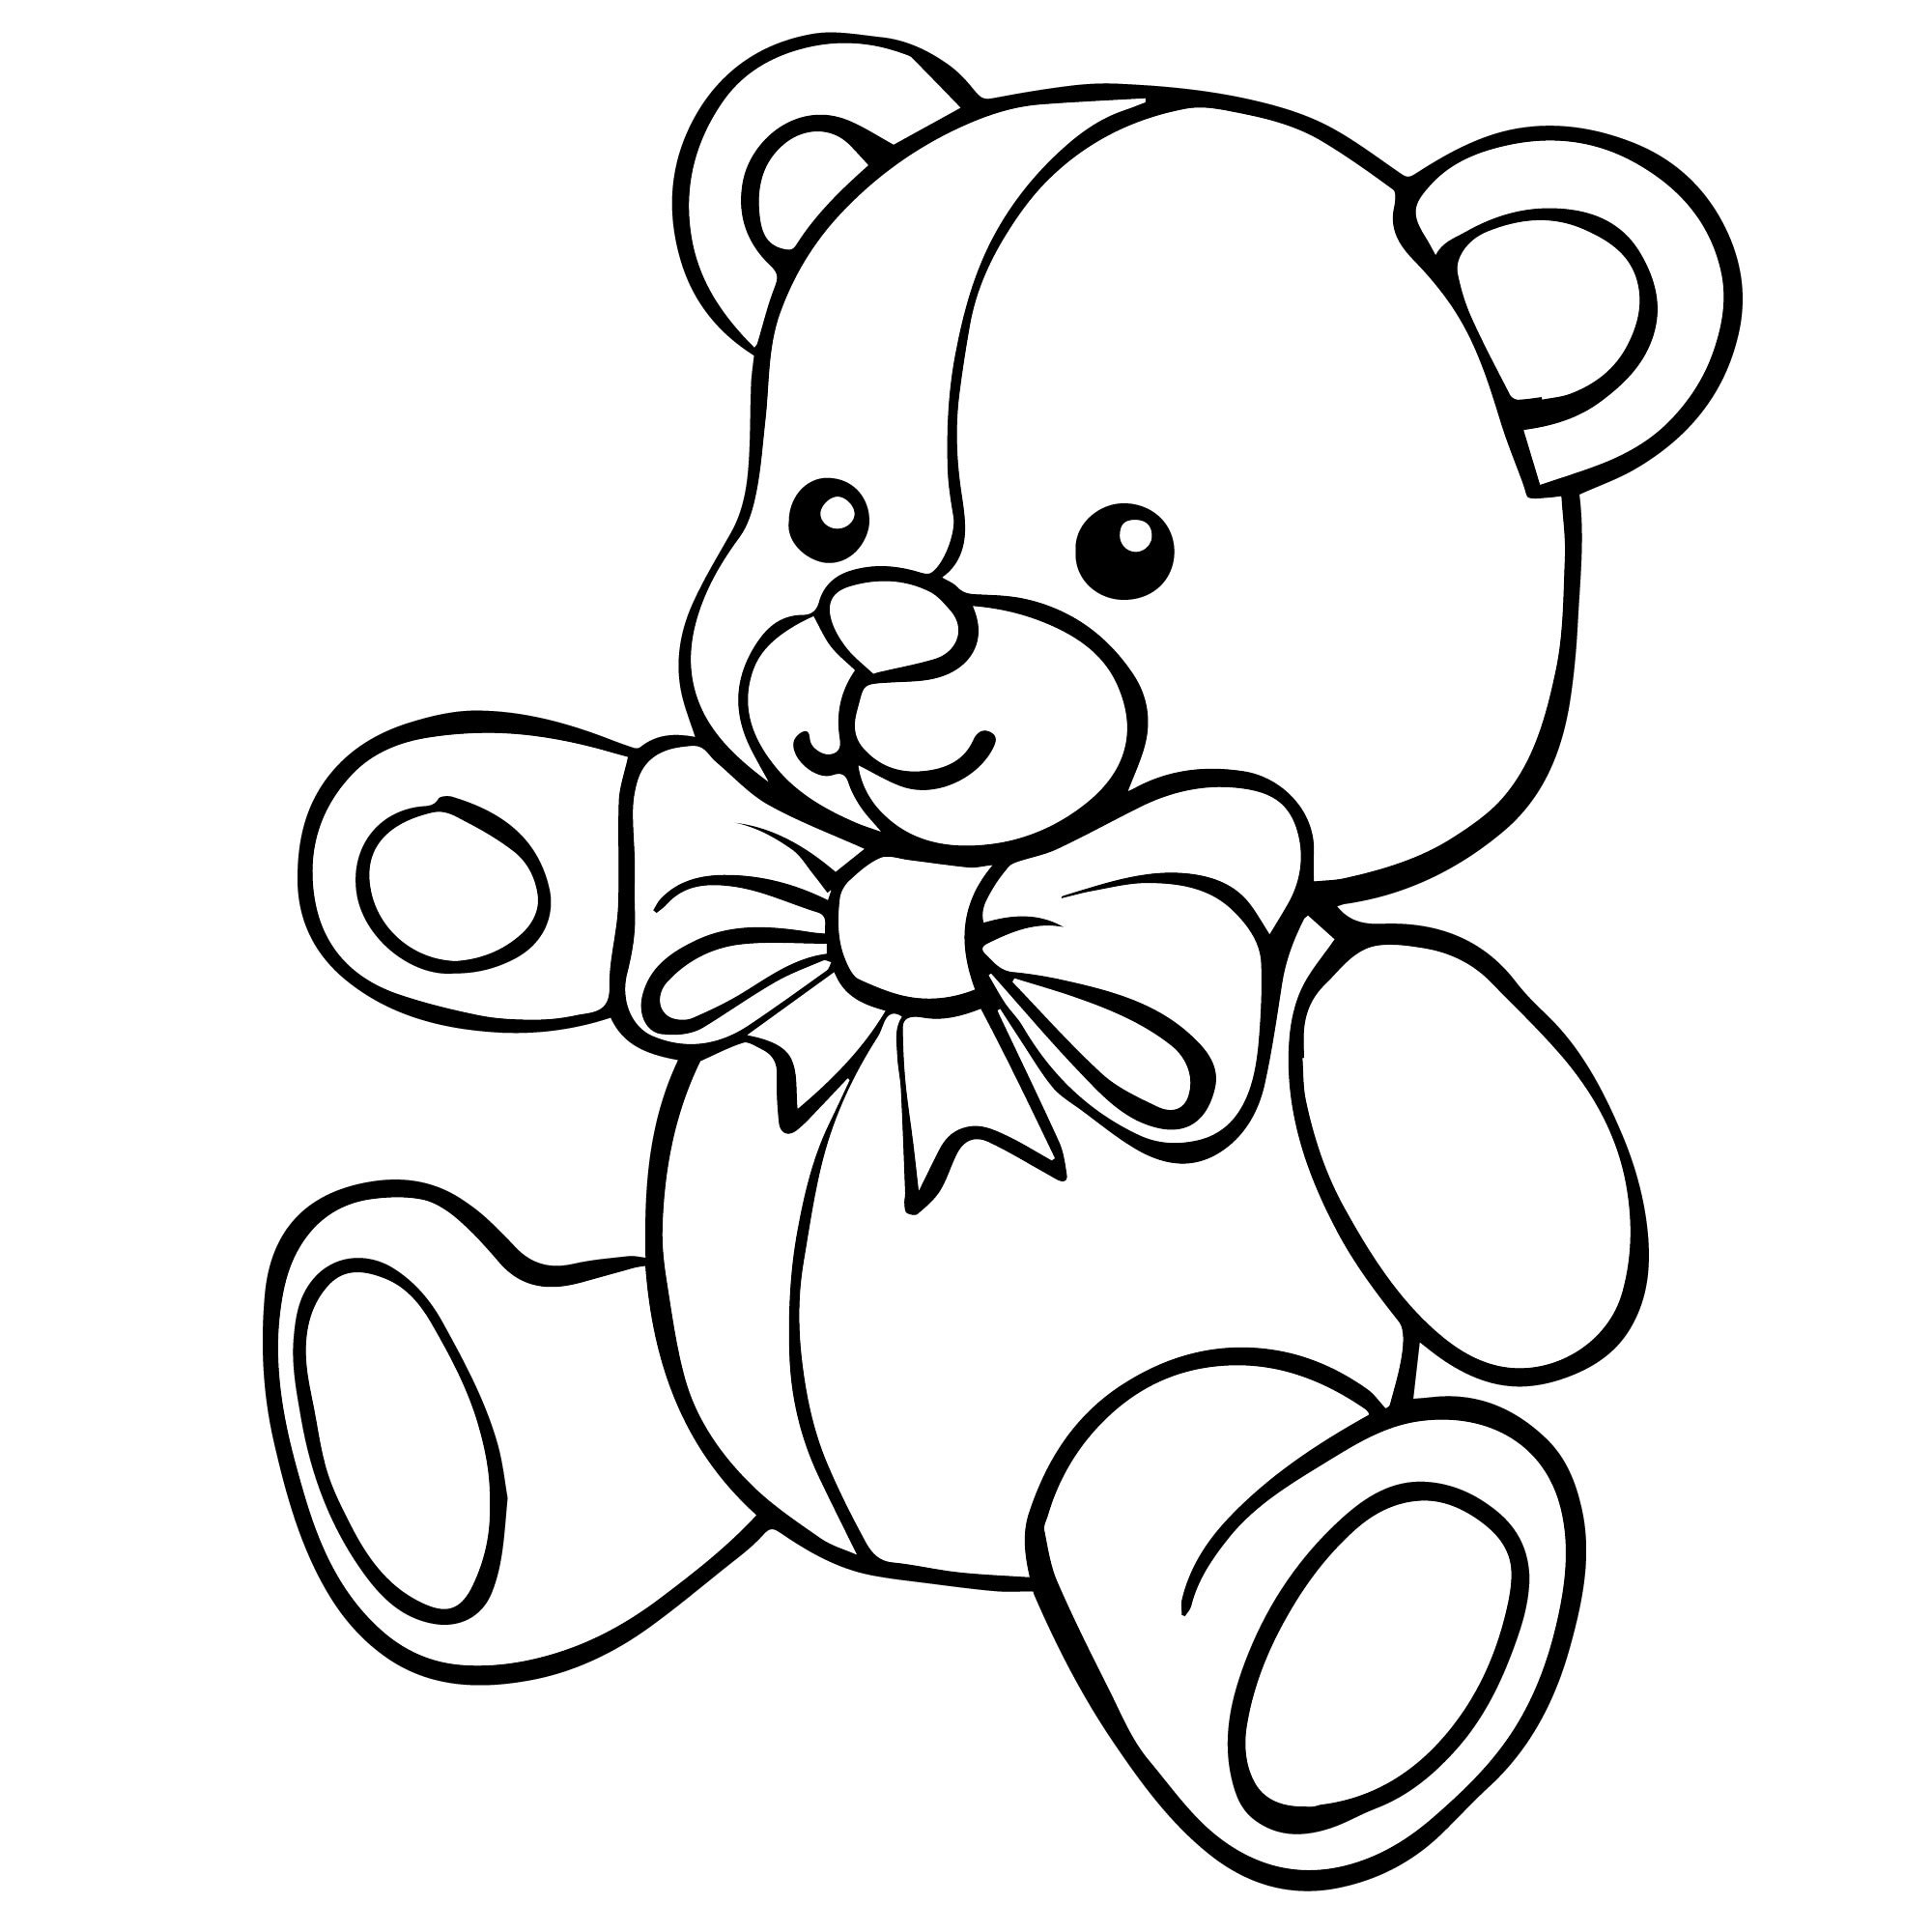 Напечатать игрушки. Раскраска "мишки". Раскраска. Медвежонок. Плюшевый мишка раскраска. Медвежонок раскраска для детей.